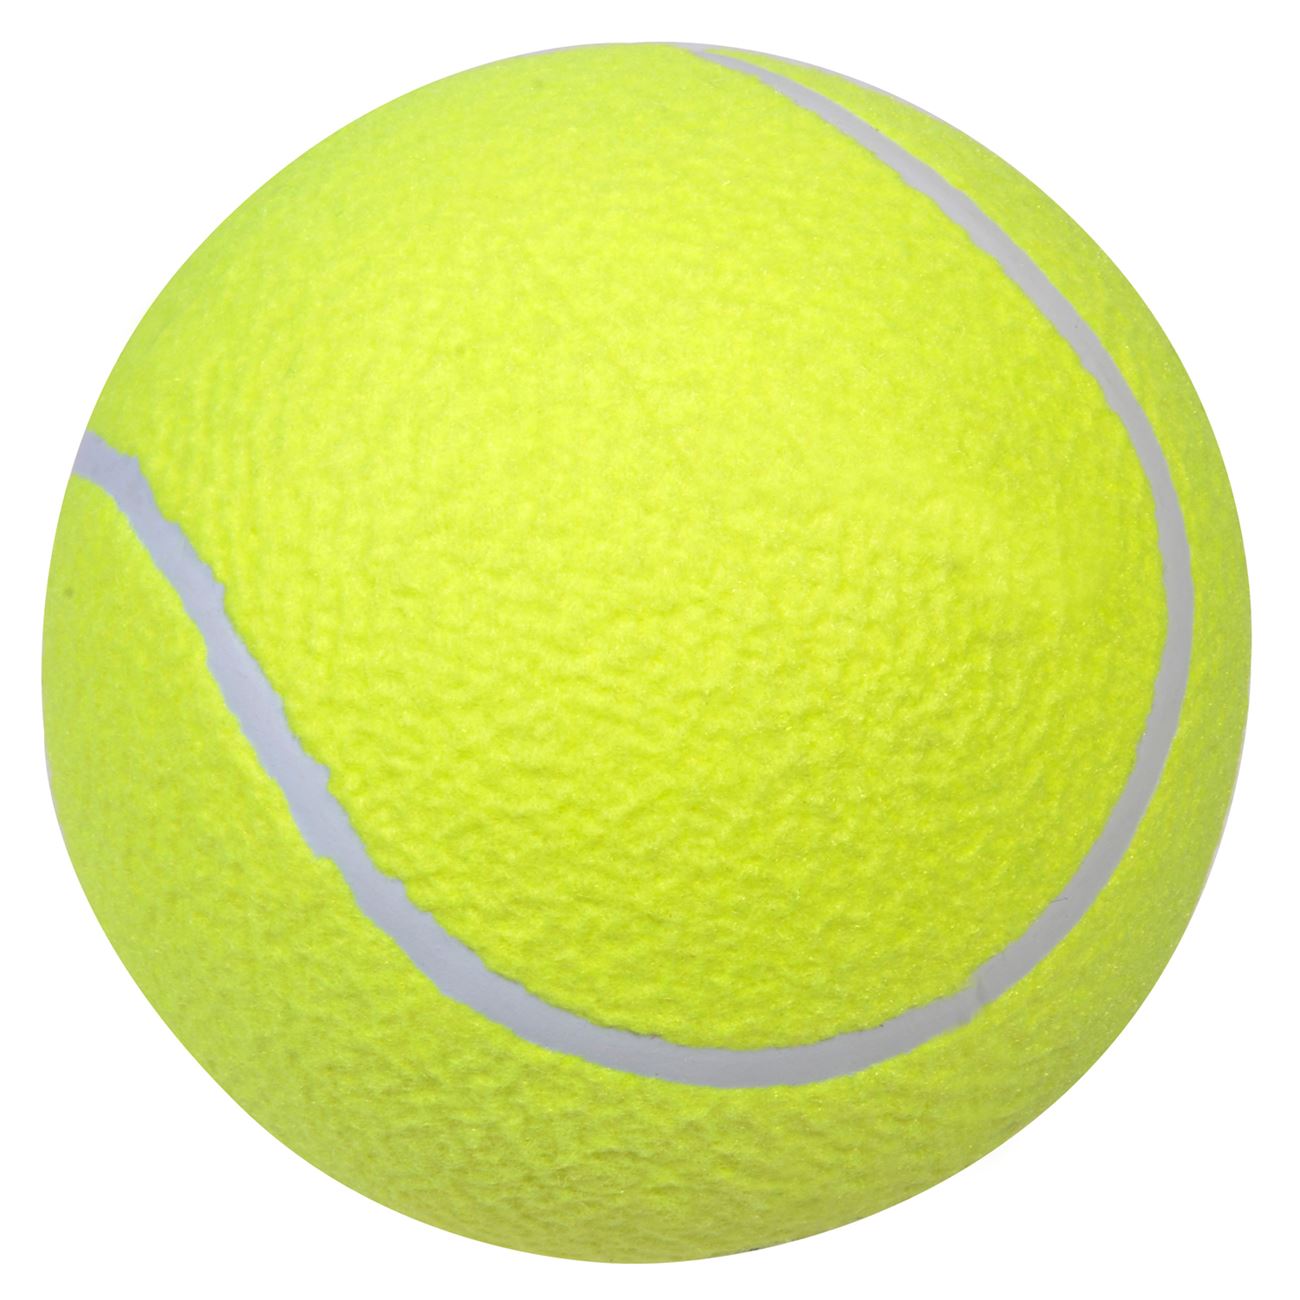 Tennis labda formájú gumilabda 15 cm 